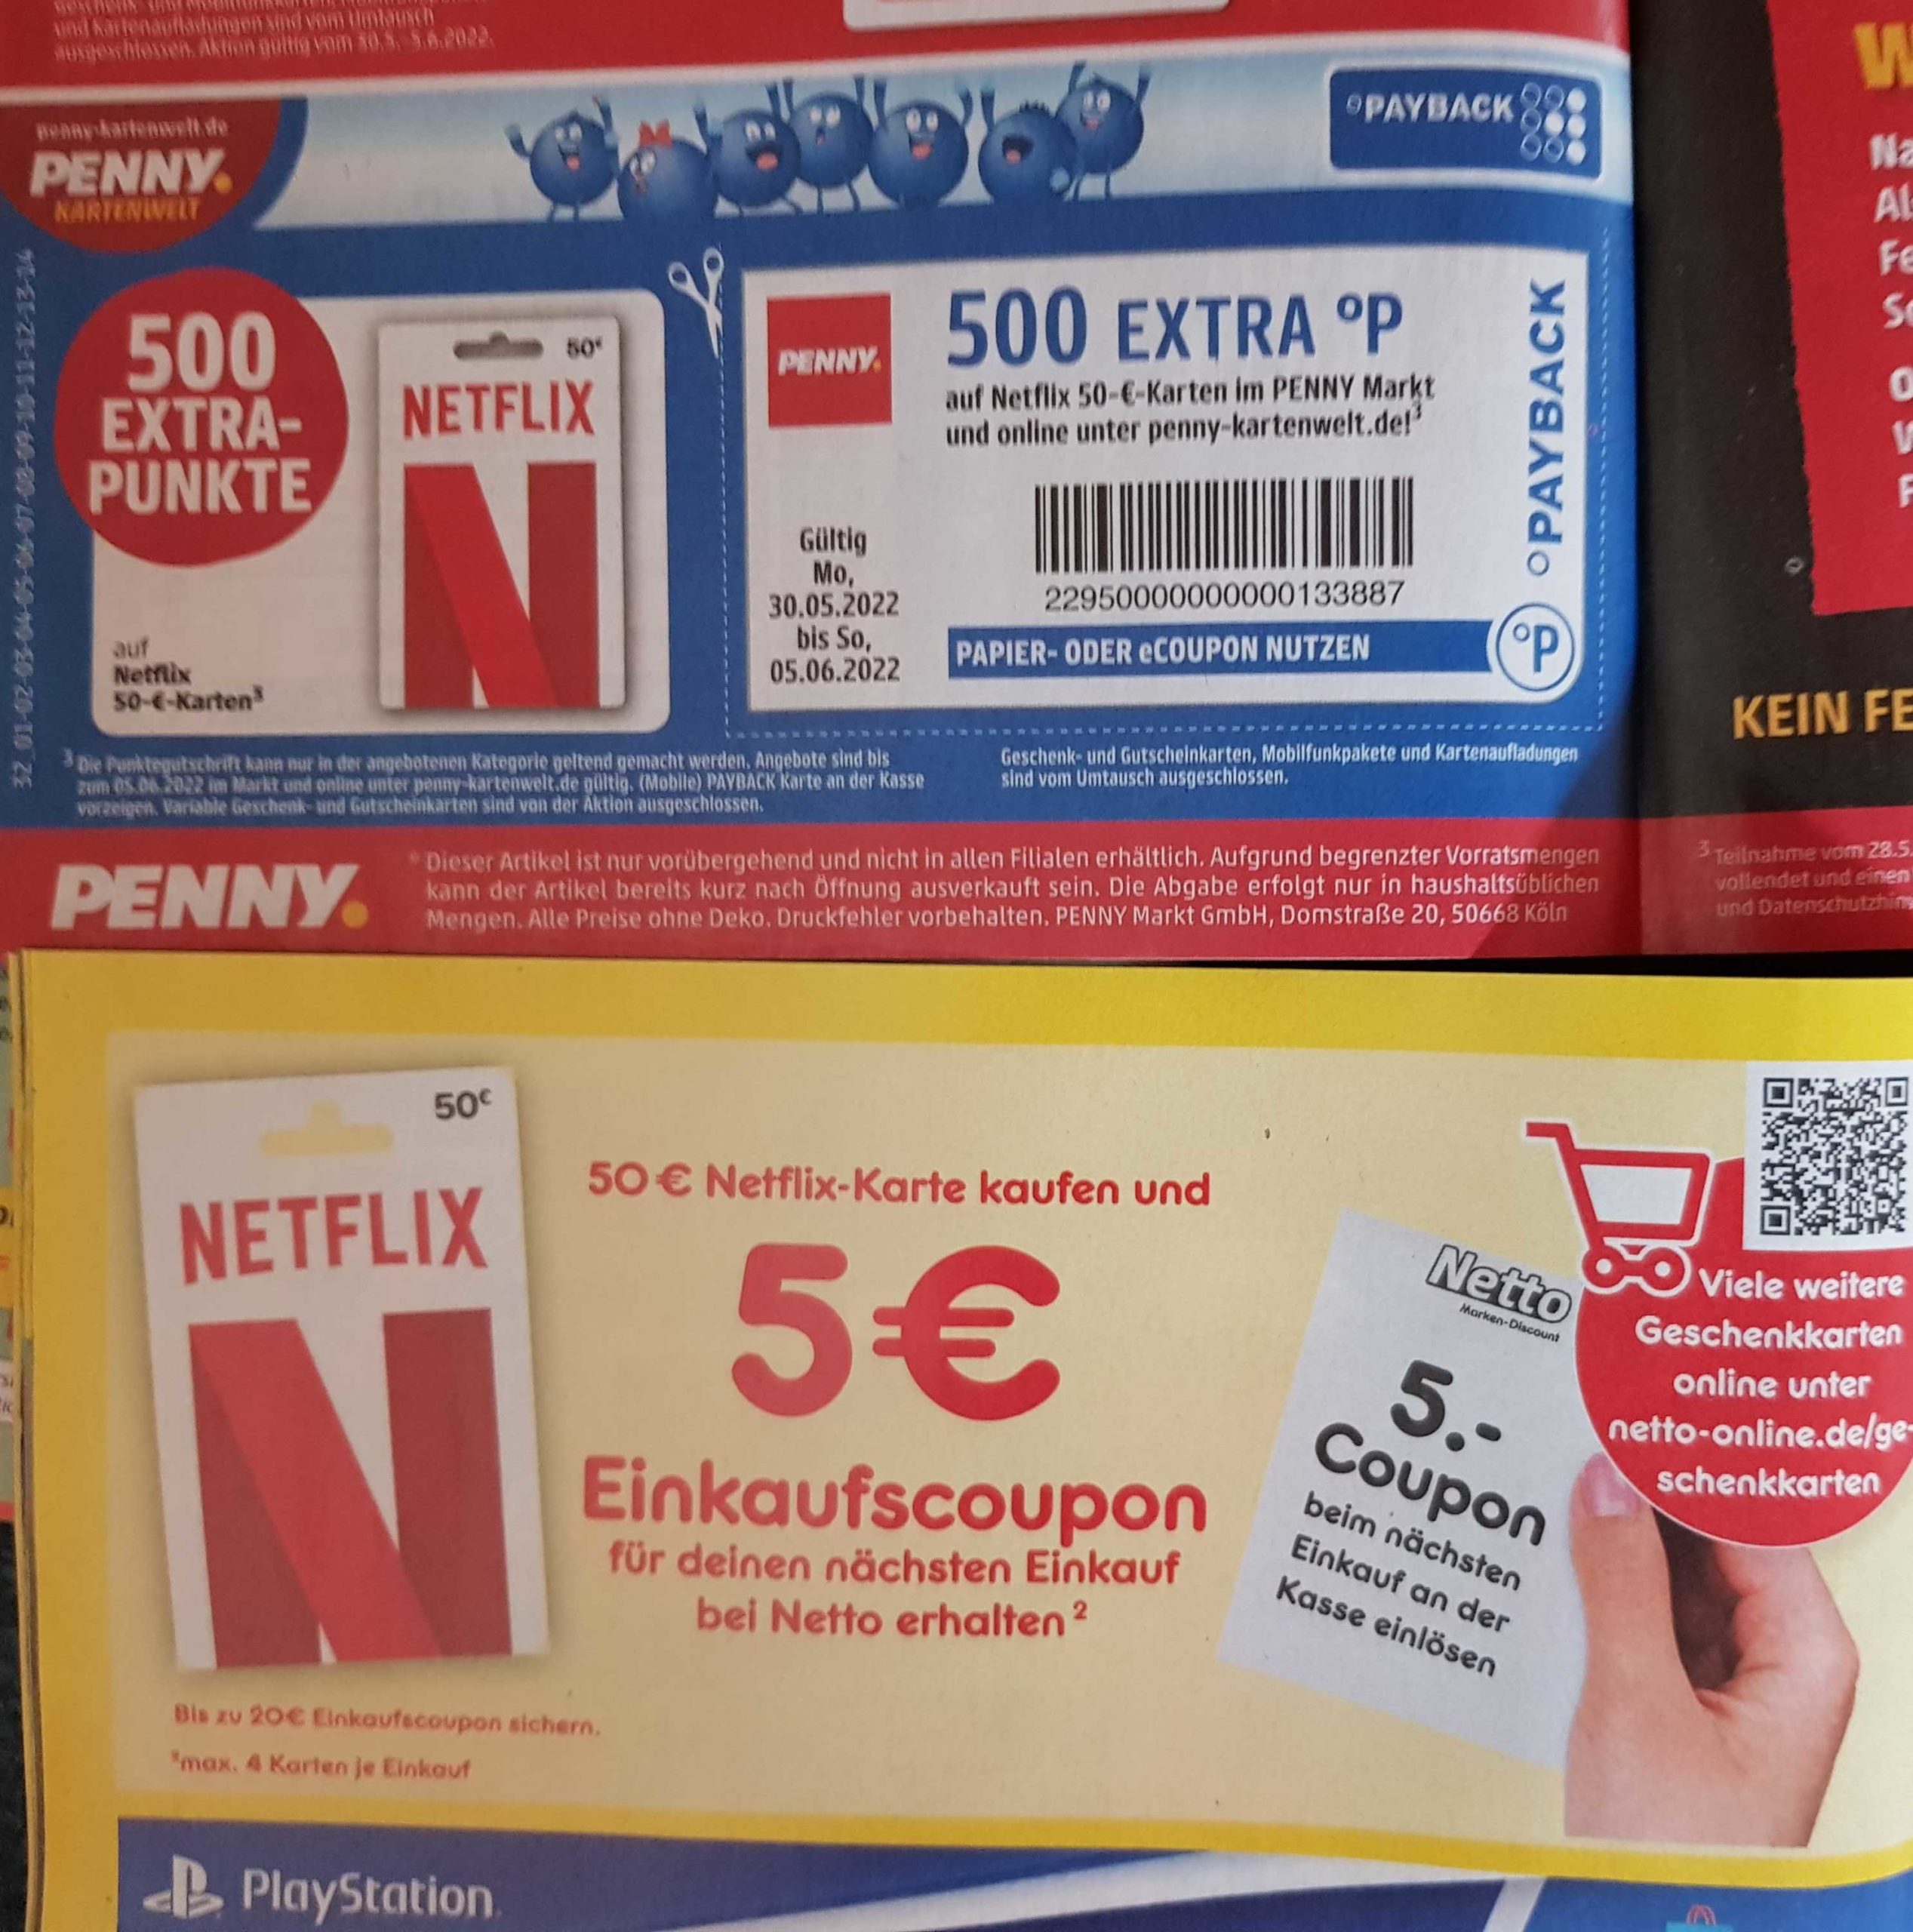 10% Rabatt auf Netflix 50€ Guthabenkarten bei Netto und Penny - MyTopDeals